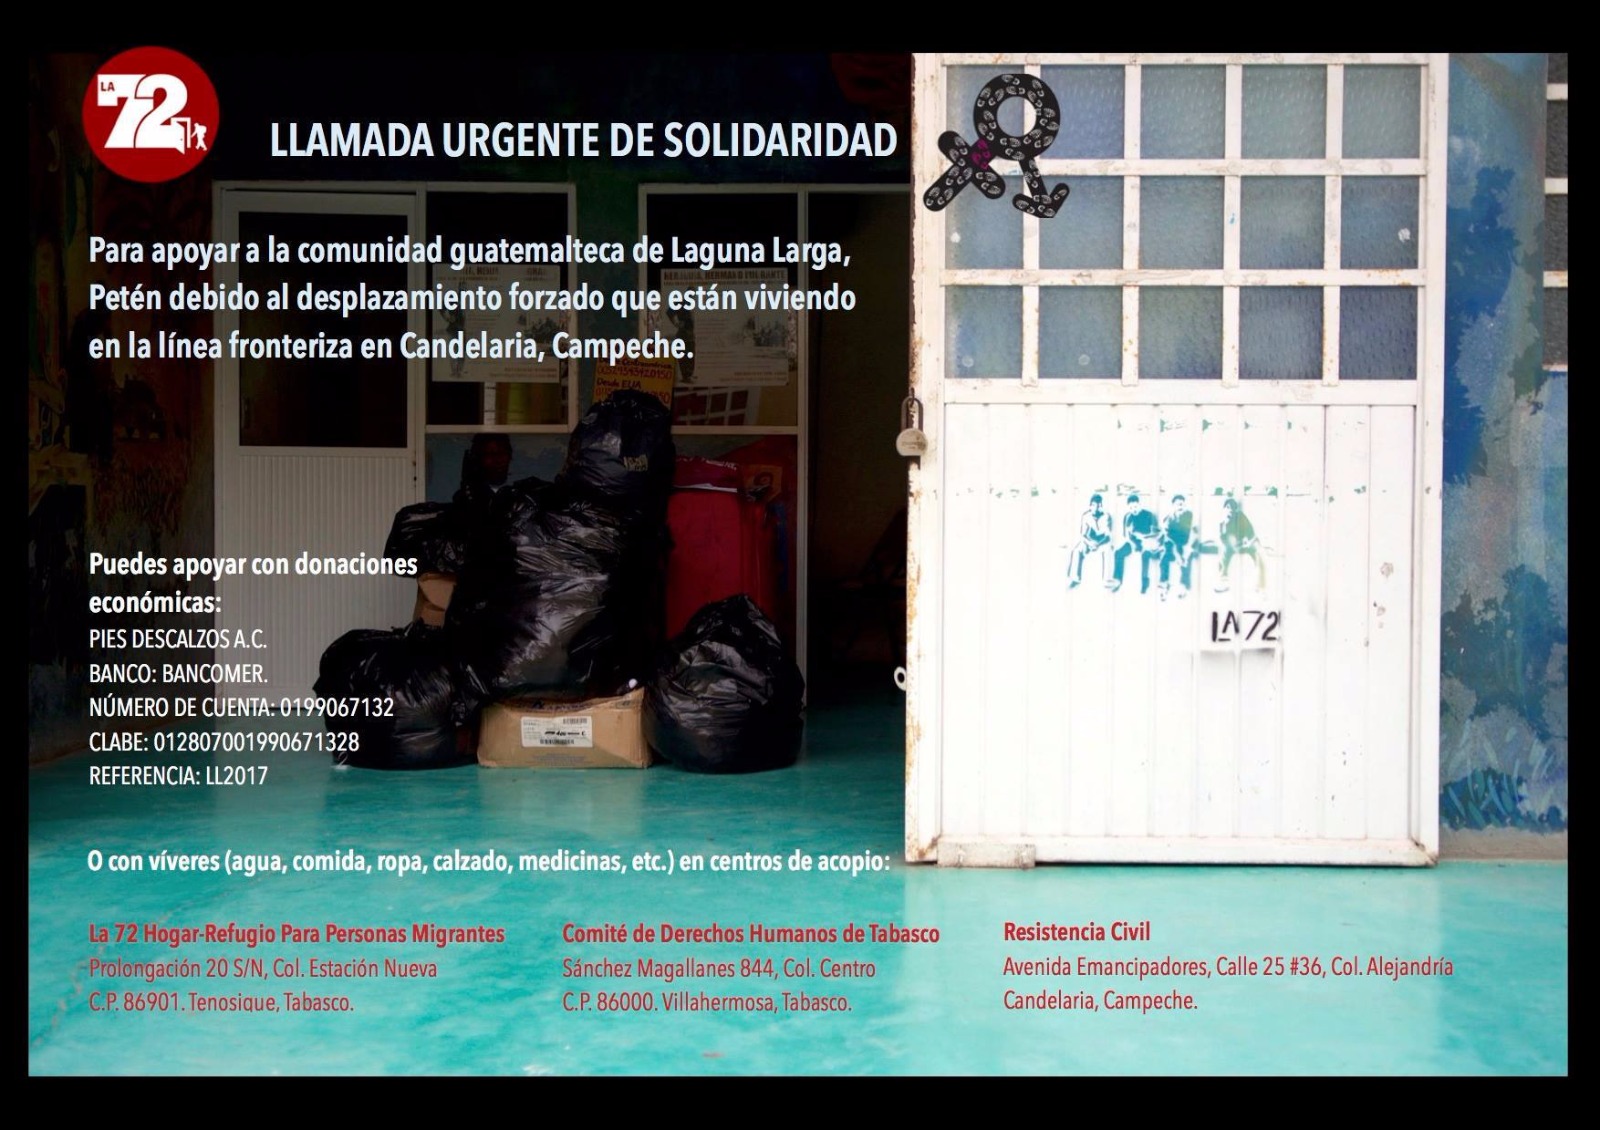 Llamada a apoyar a la comunidad guatemalteca desplazada forzosamente